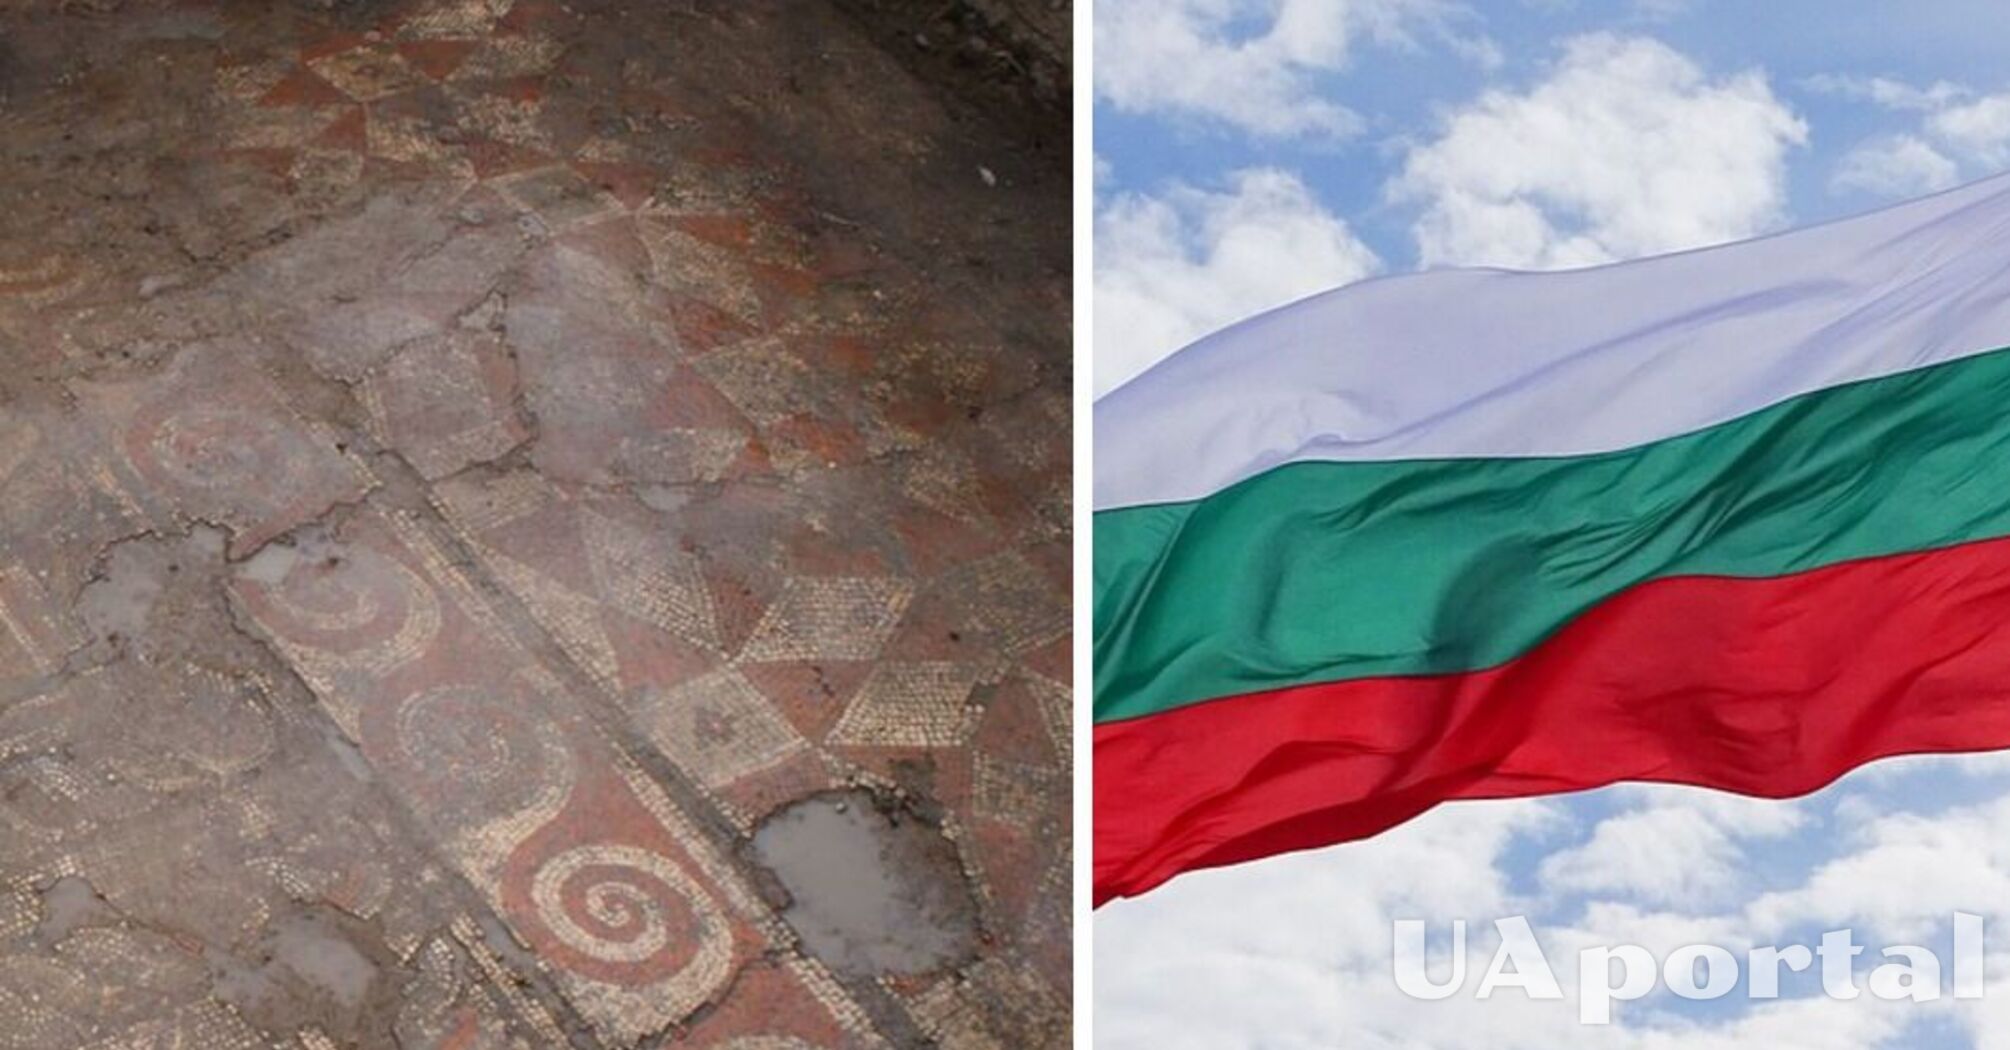 В Болгарии обнаружили напольную мозаику с раннехристианским орнаментом (фото)